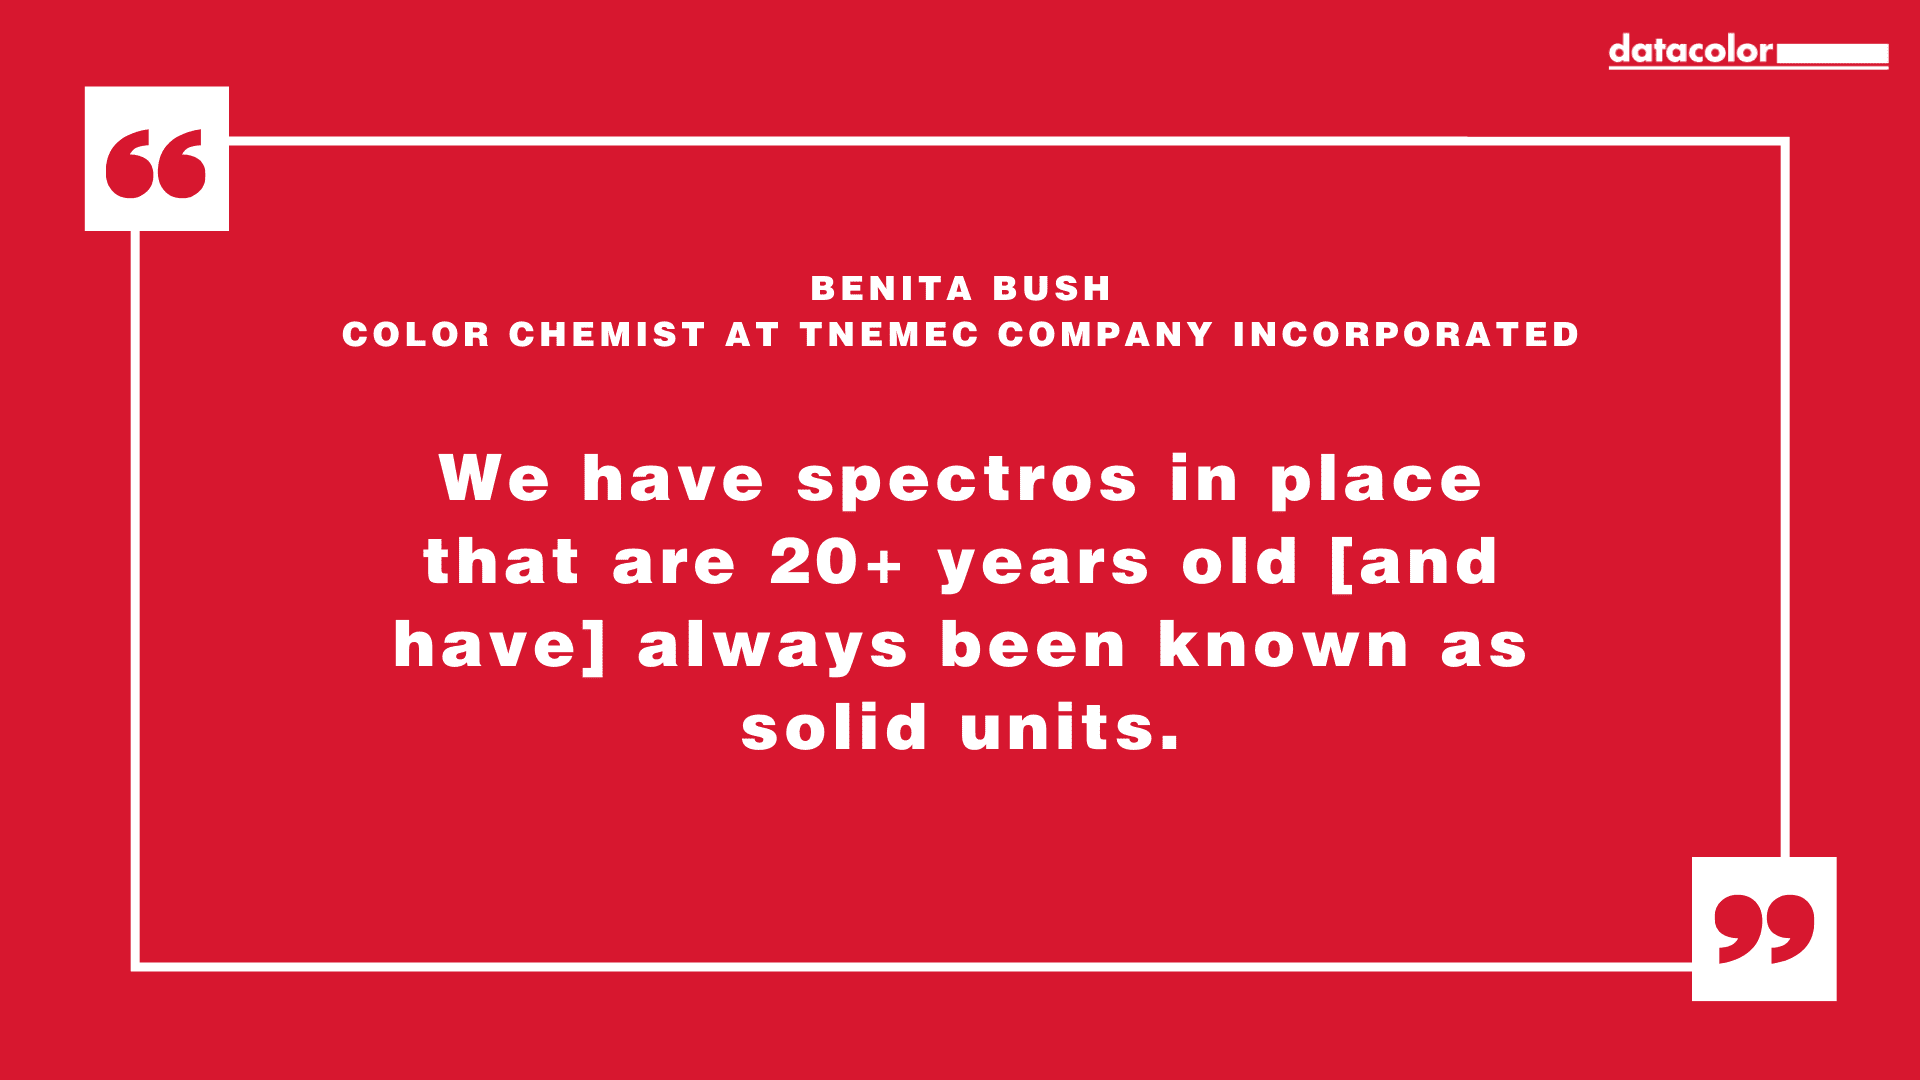 Citação de Benita Bush, Química de Cor da Tnemec Company Incorporated